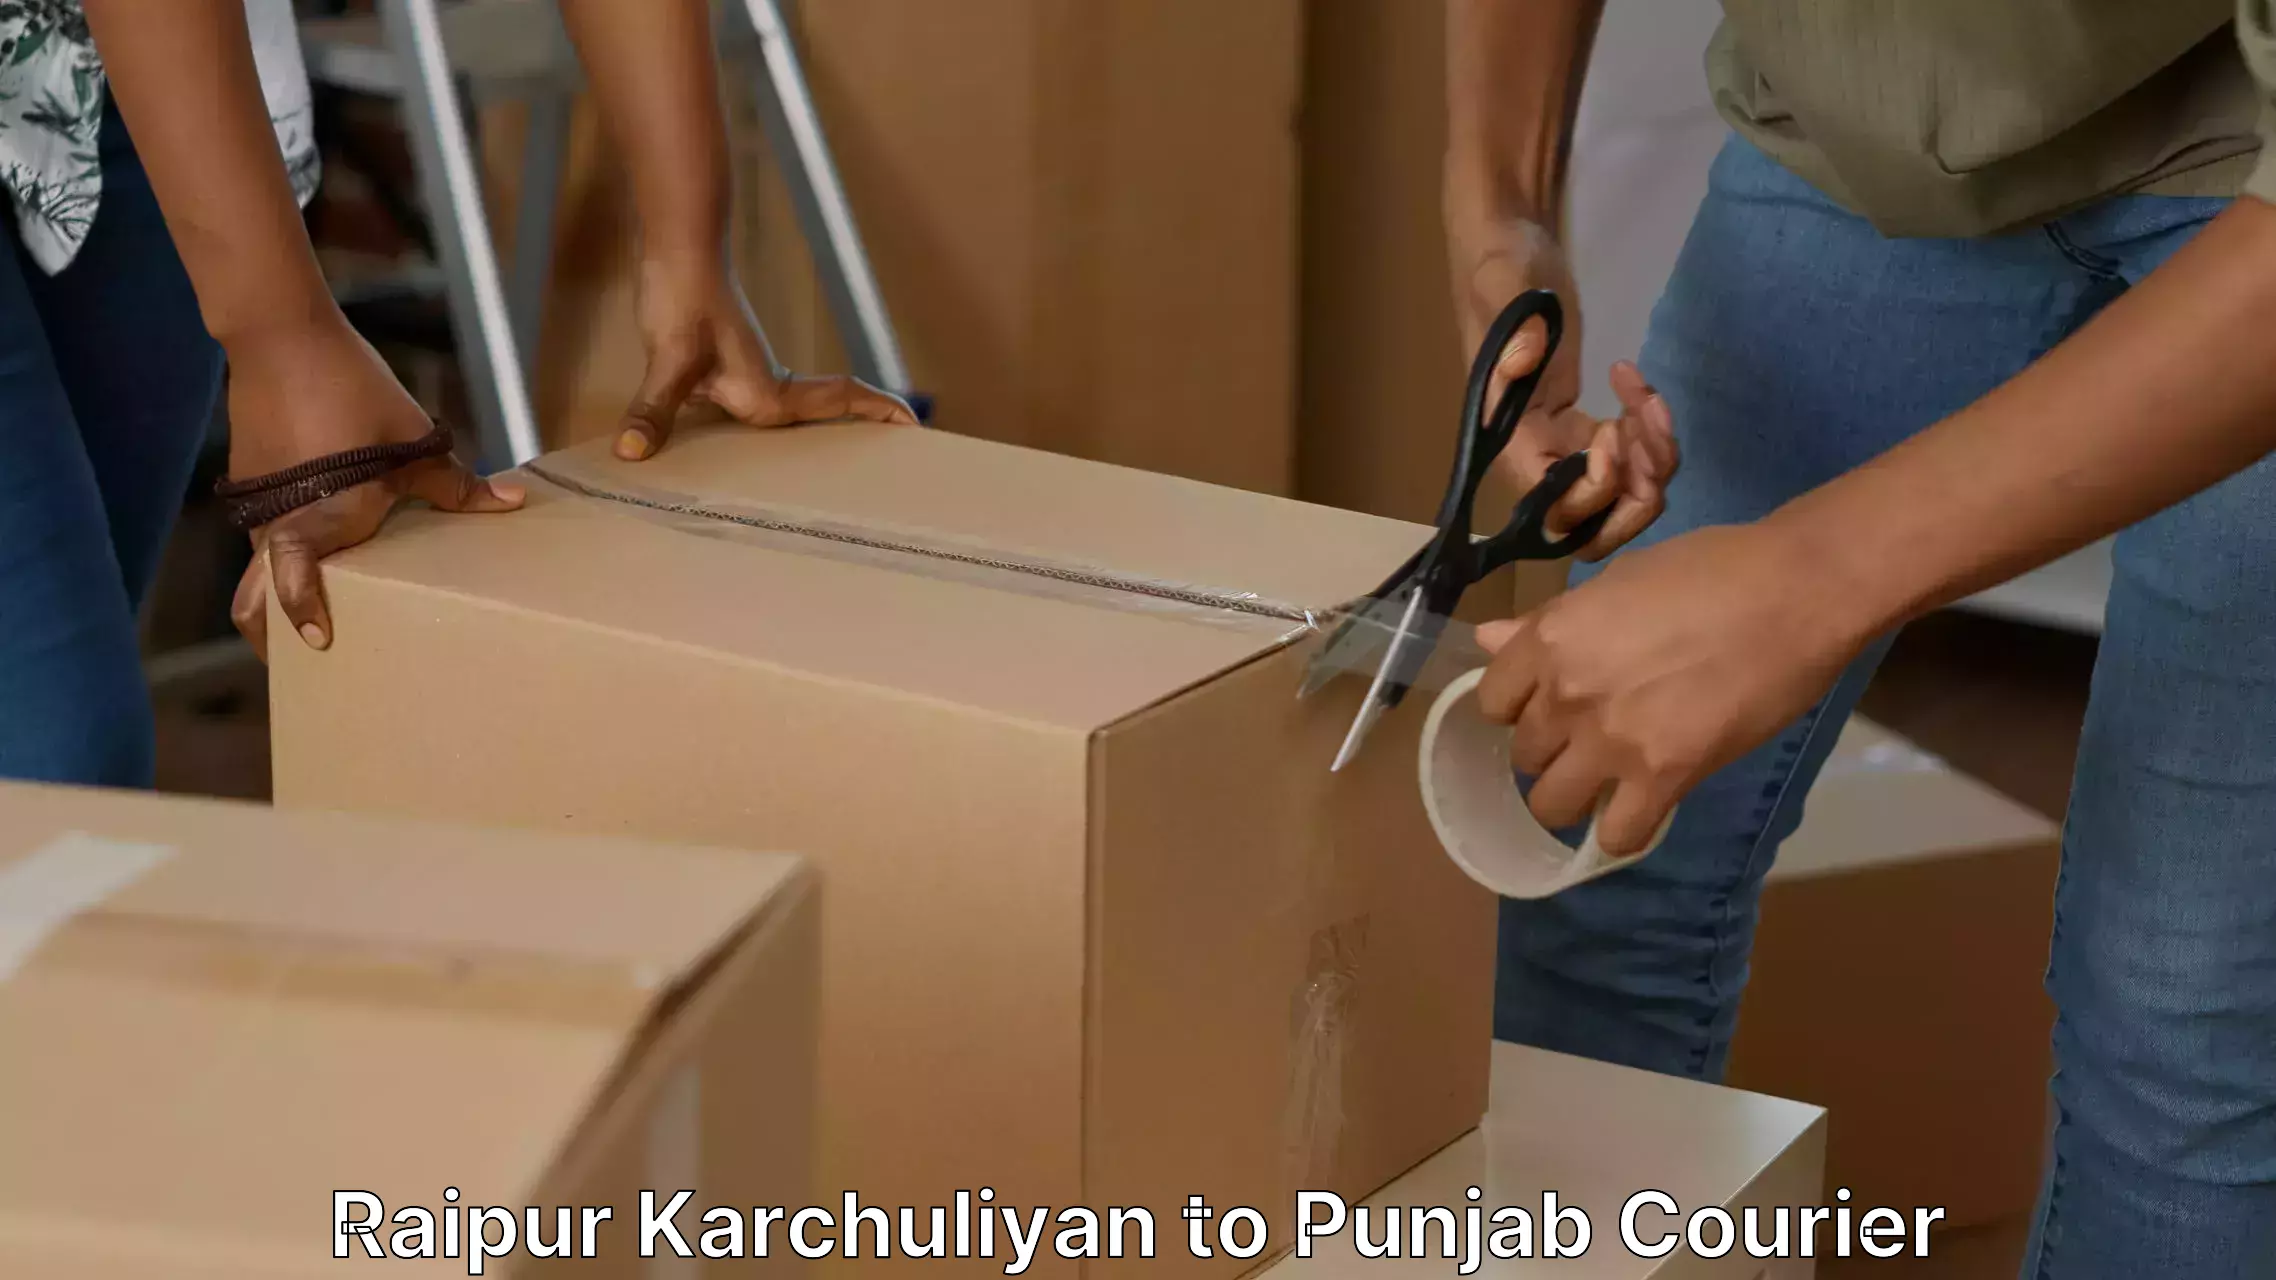 Furniture moving and handling Raipur Karchuliyan to Samana